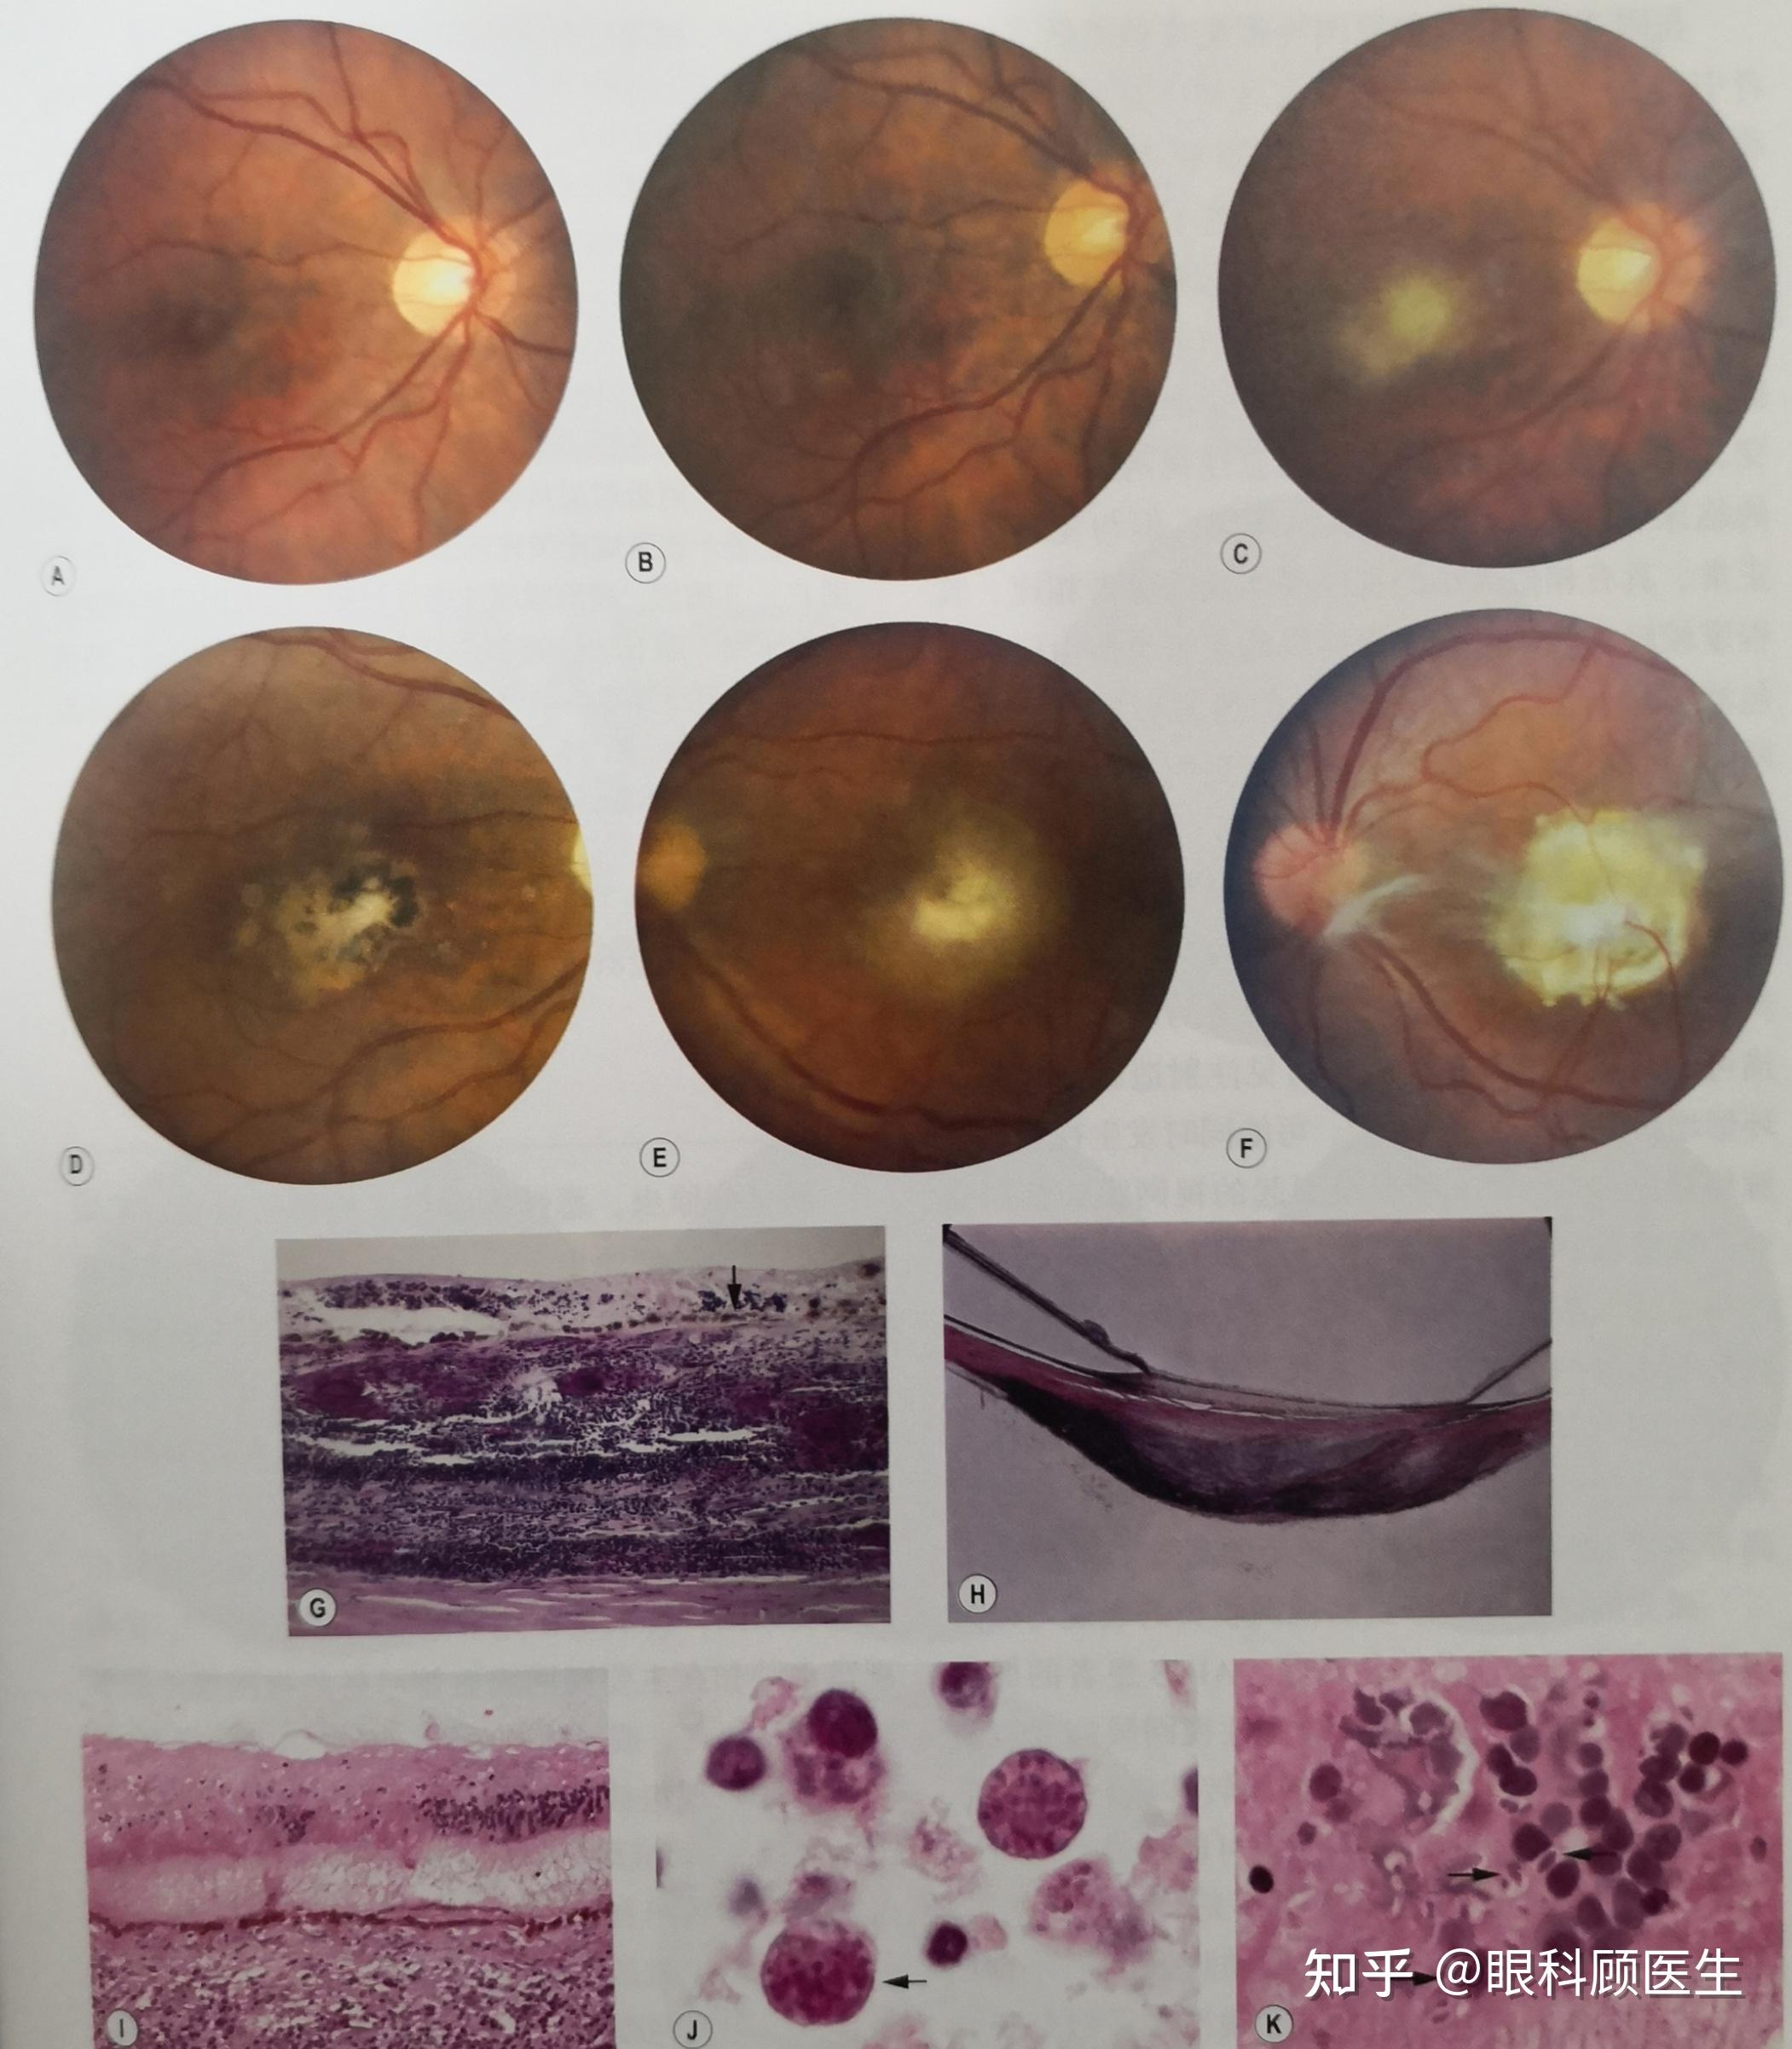 弓形虫病引起的视网膜脉络膜炎是什么样的? 